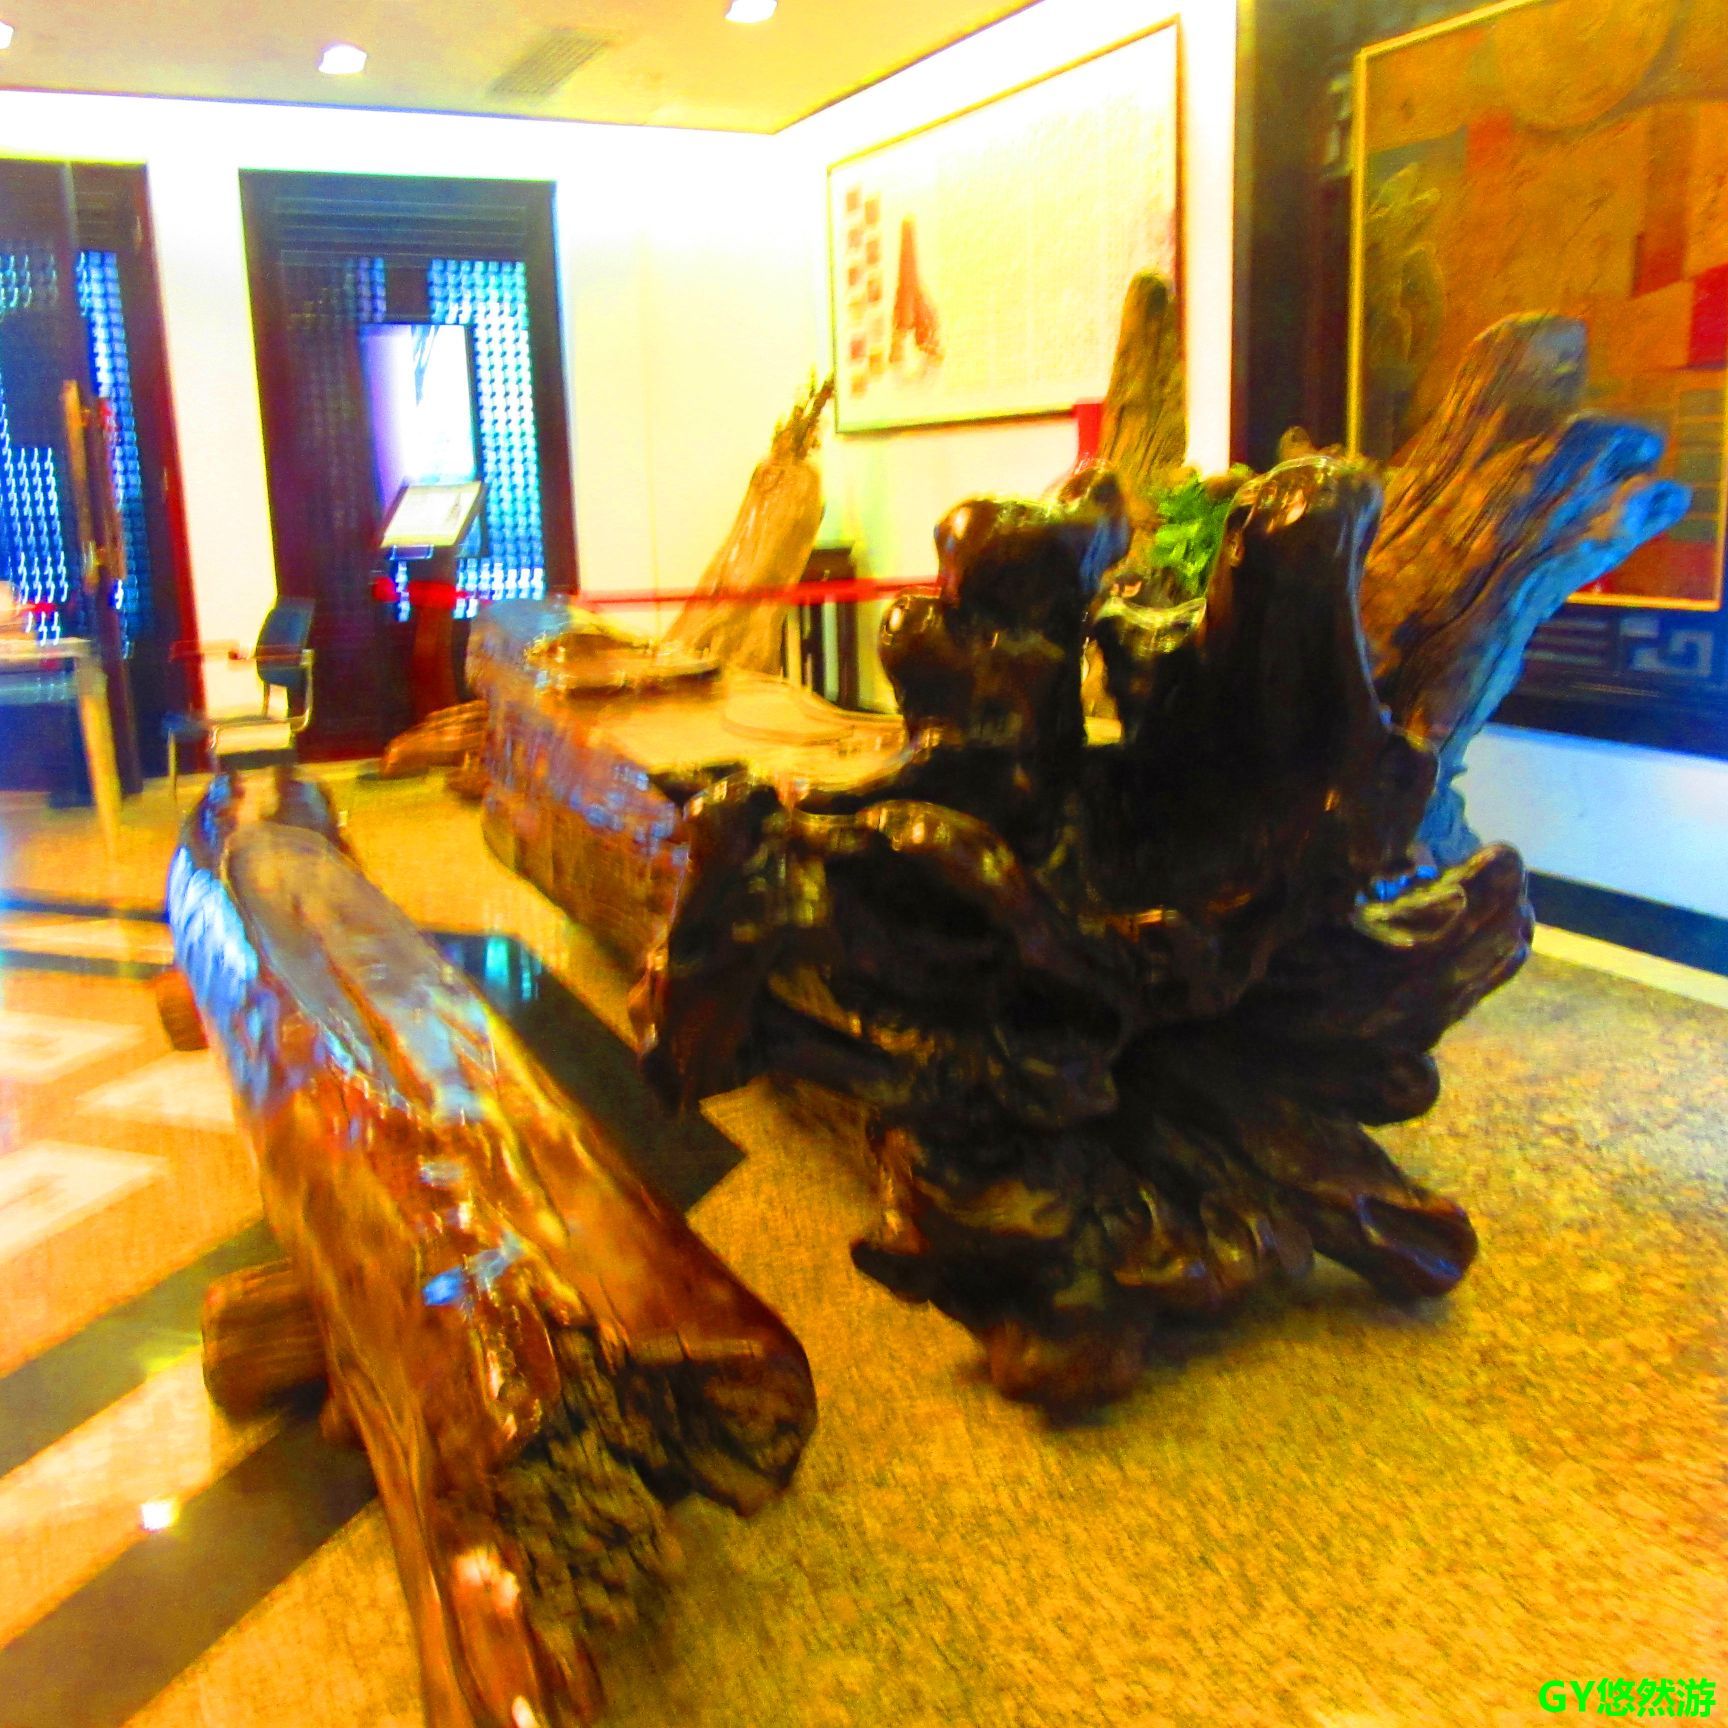 缘结乌木之初一一木质的形成_馆内动态_成都乌木艺术博物馆